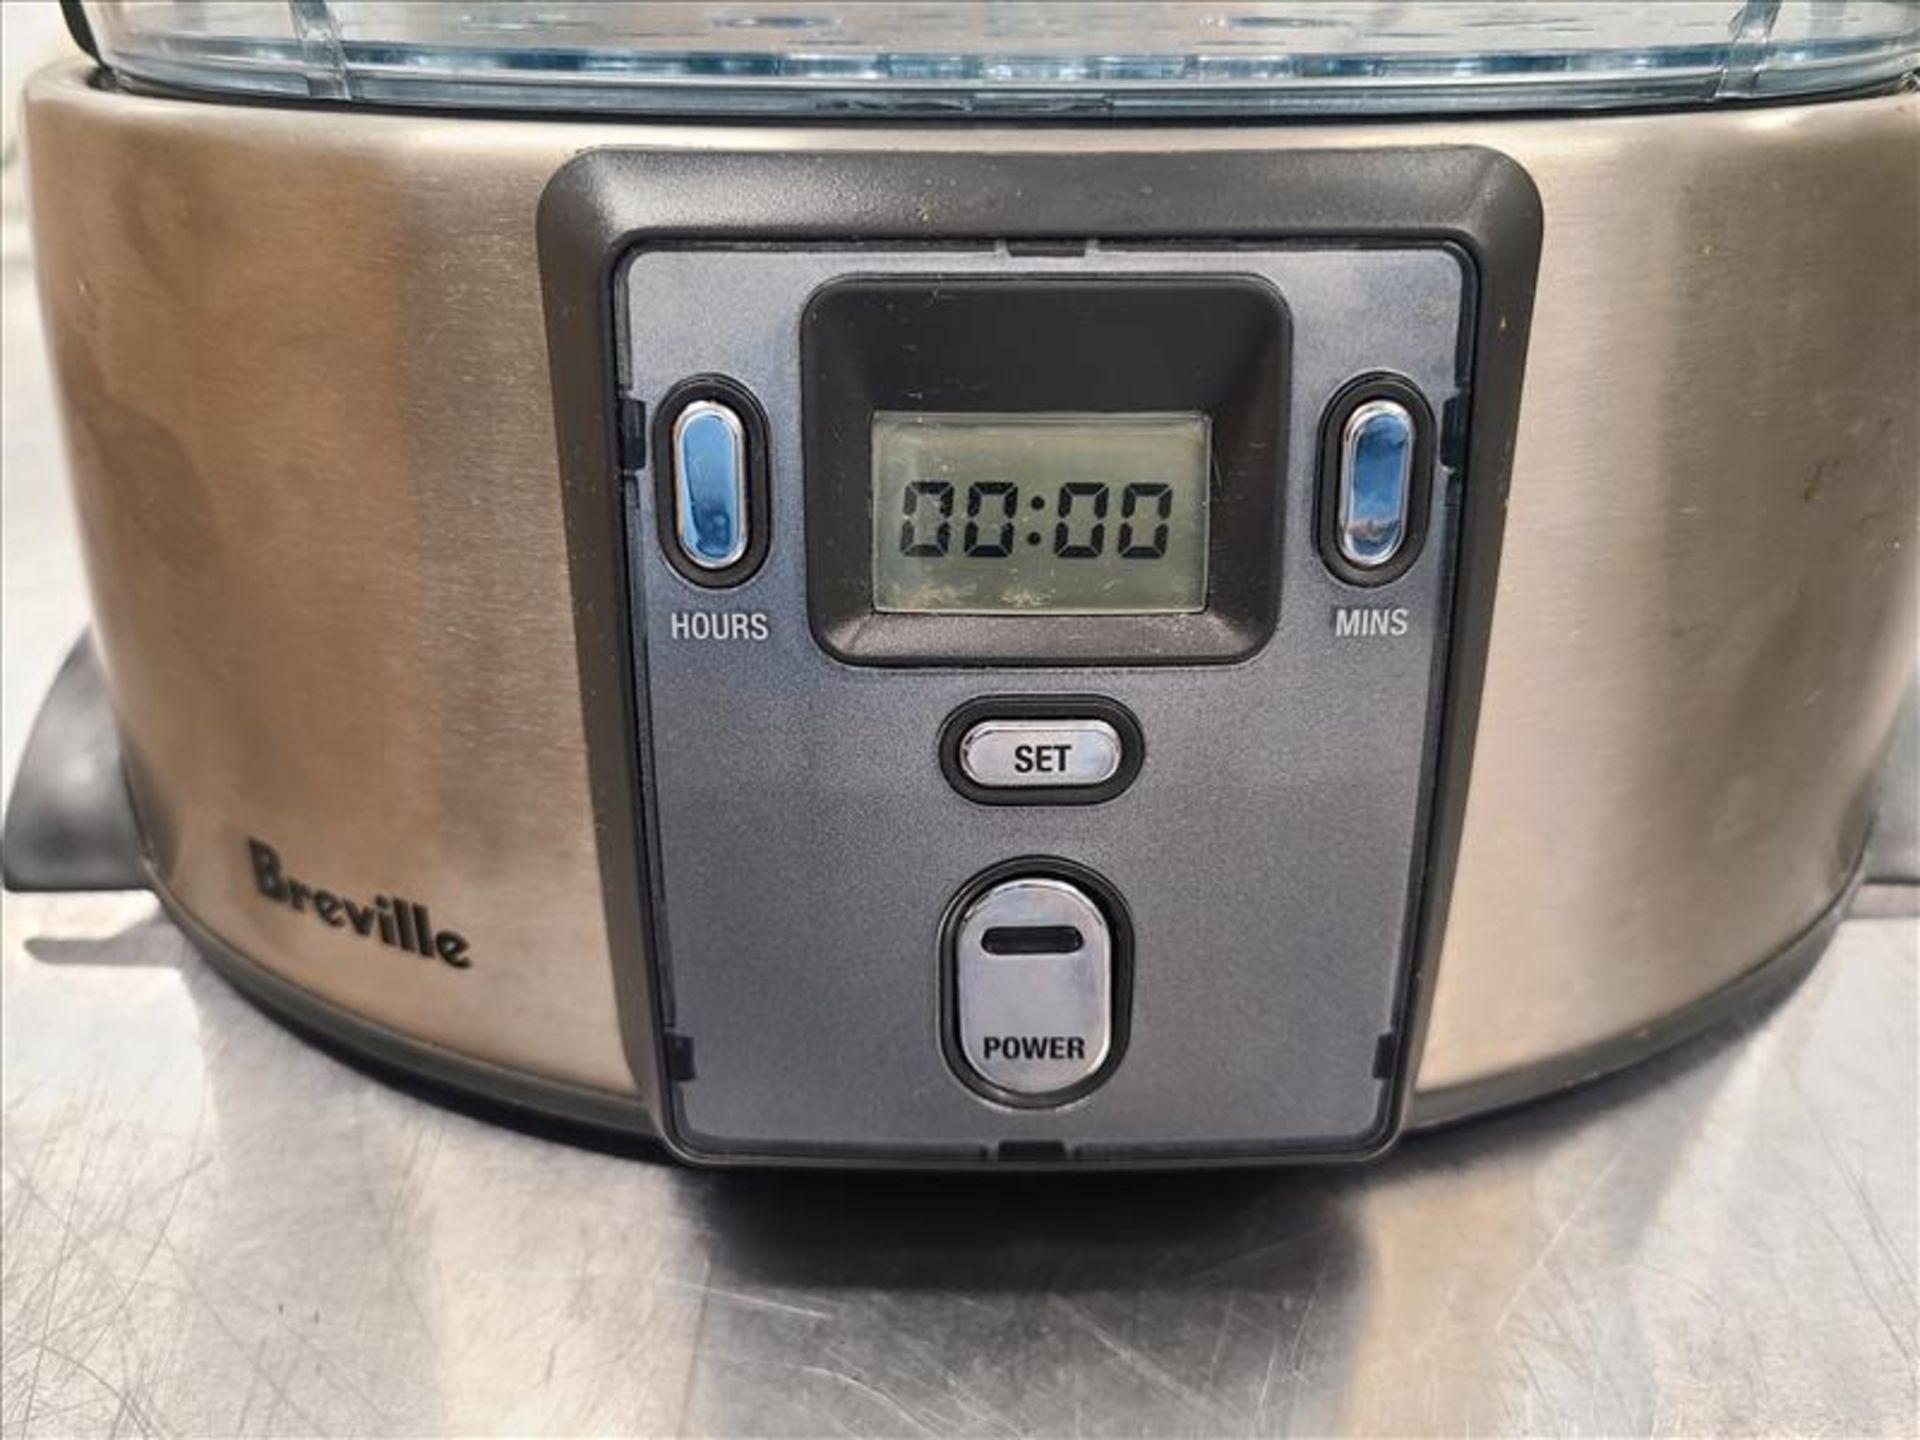 Breville Digital Food Steamer, mod. BFS600 [Loc.Test Kitchen] - Bild 2 aus 4